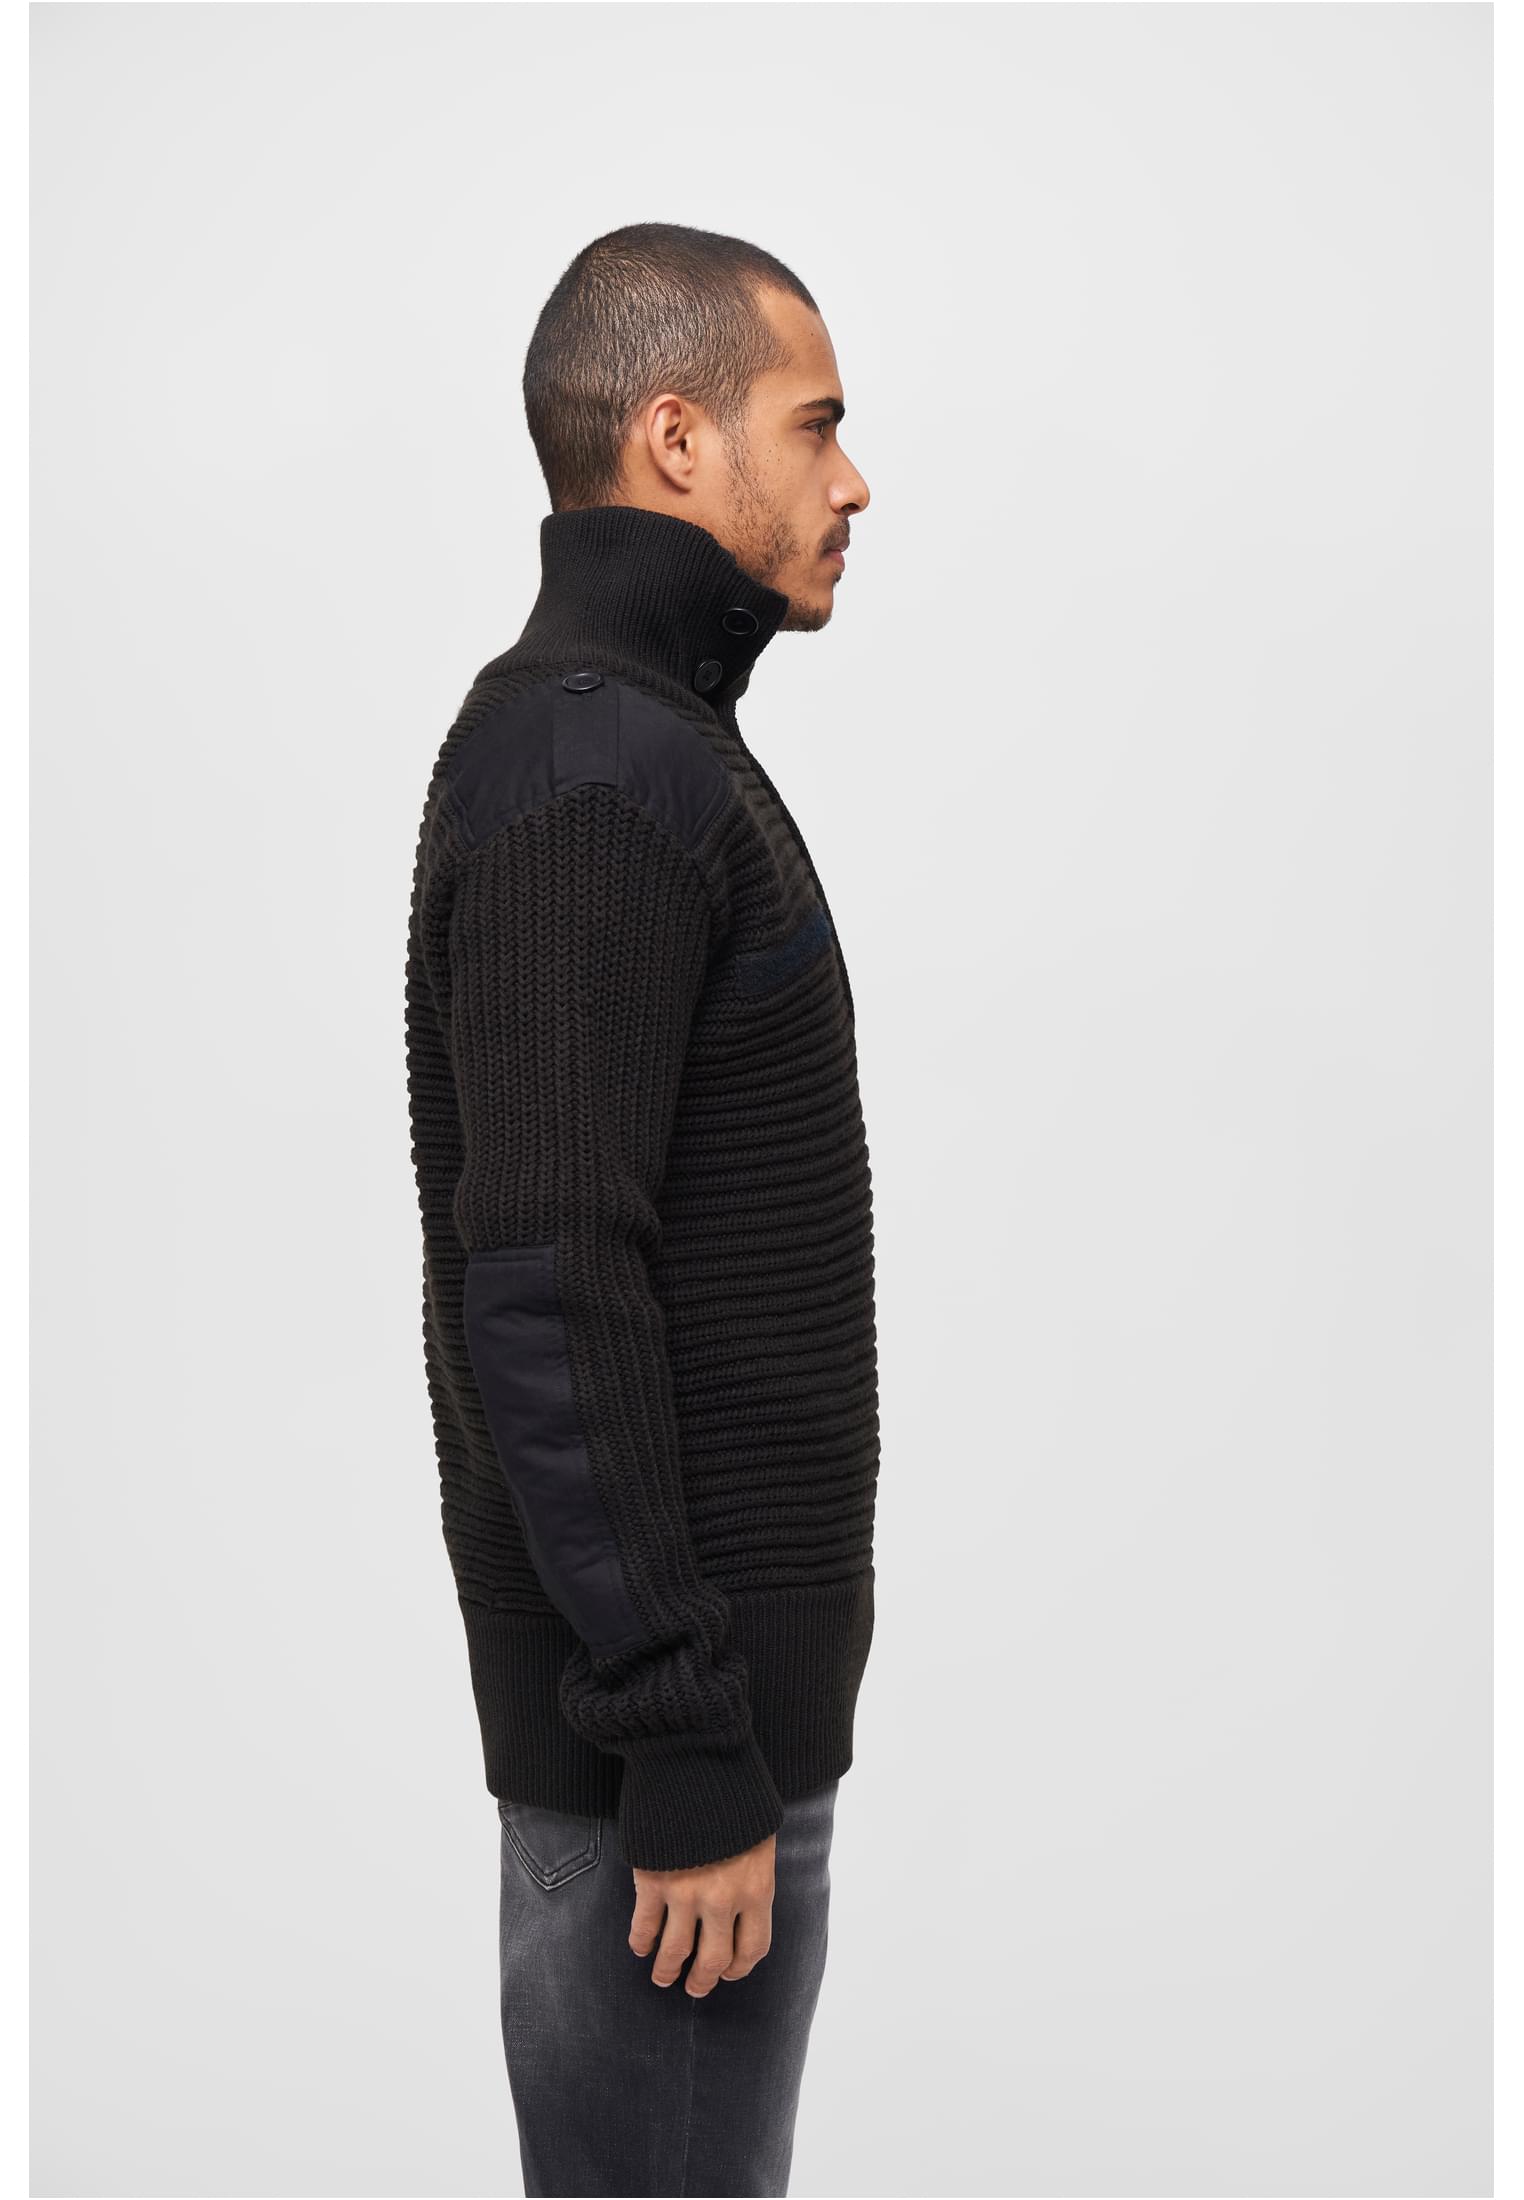 Pullover Alpin Pullover in Farbe black